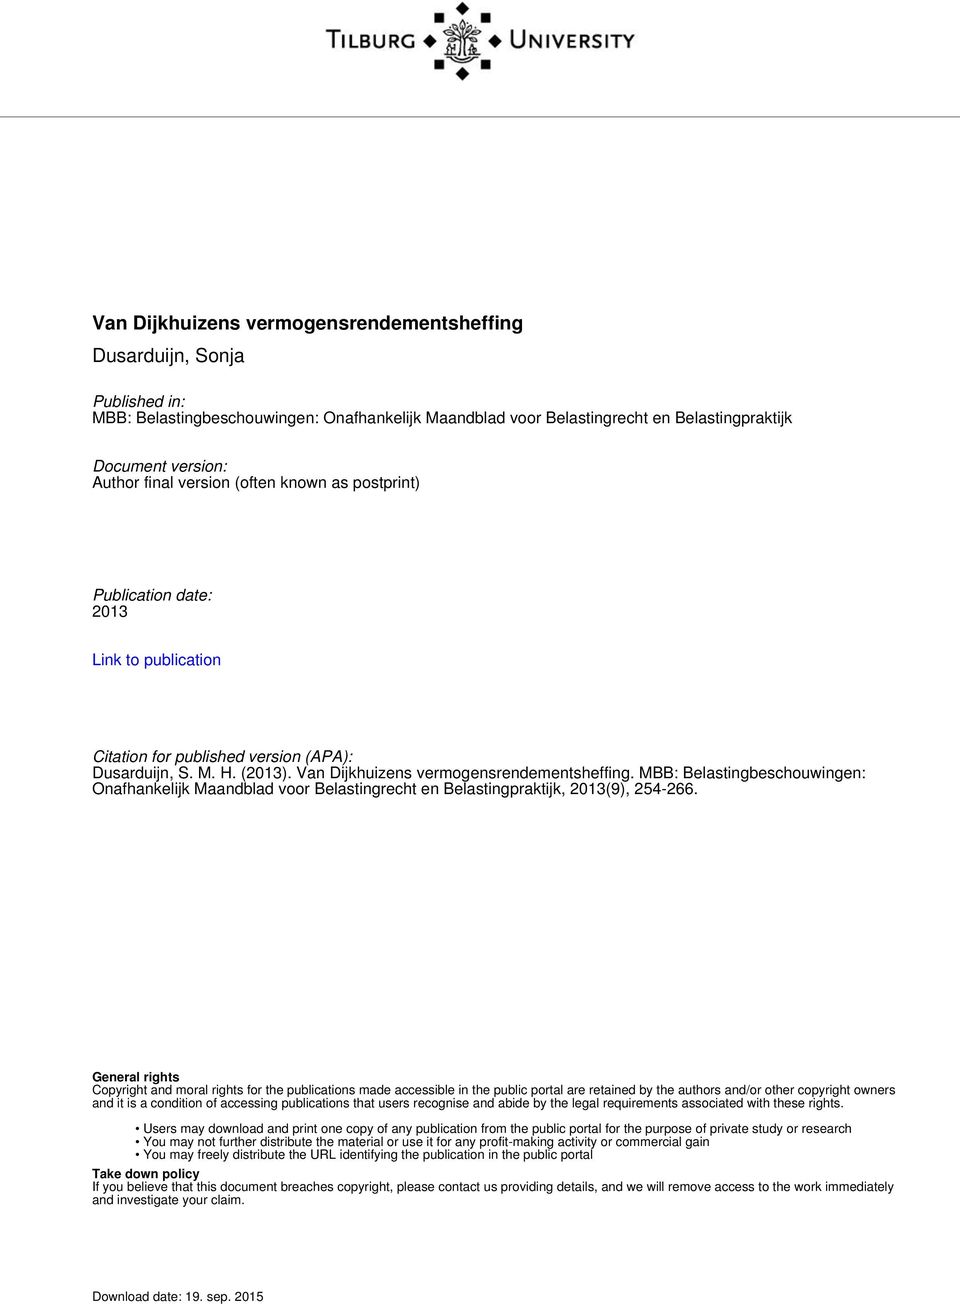 Van Dijkhuizens vermogensrendementsheffing. MBB: Belastingbeschouwingen: Onafhankelijk Maandblad voor Belastingrecht en Belastingpraktijk, 2013(9), 254-266.